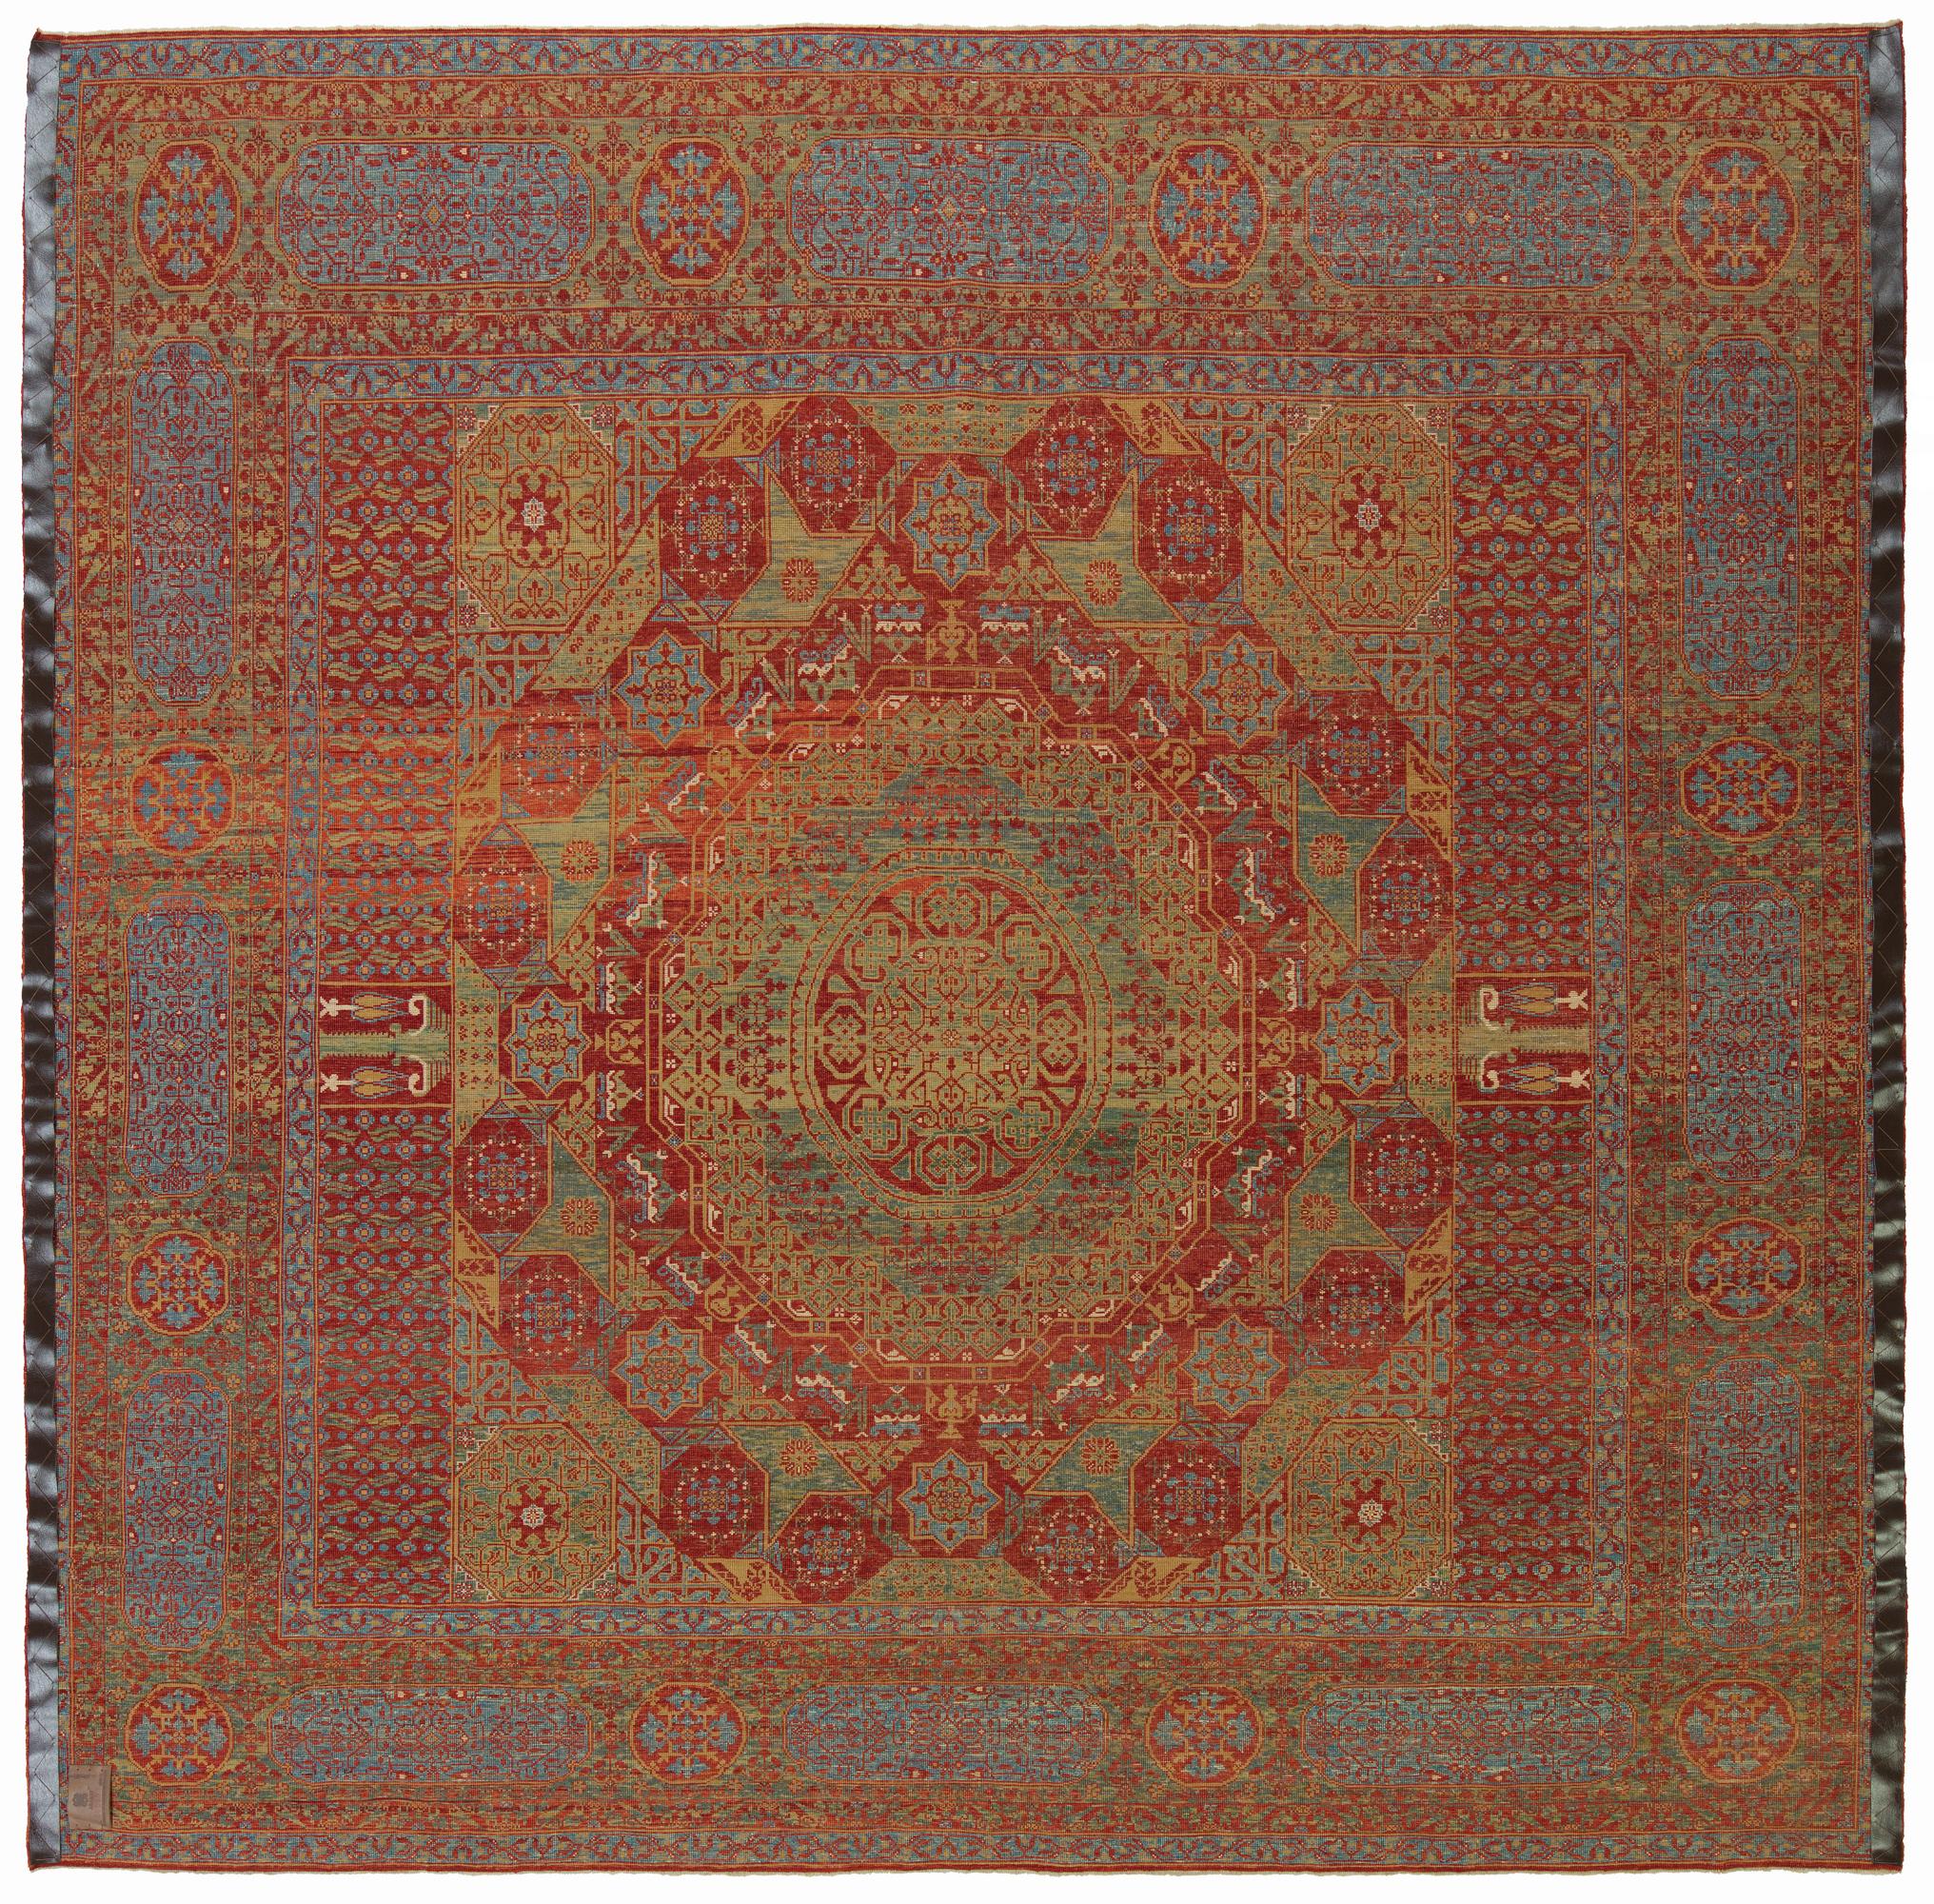 Die Designquelle des Teppichs stammt aus dem Buch How to Read - Islamic Carpets, Walter B. Denny, The Metropolitan Museum of Art, New York 2014 Abb.61,62. Der Fünf-Sterne-Medaillon-Teppich wurde im frühen 16. Jahrhundert vom Mamluken-Sultan von